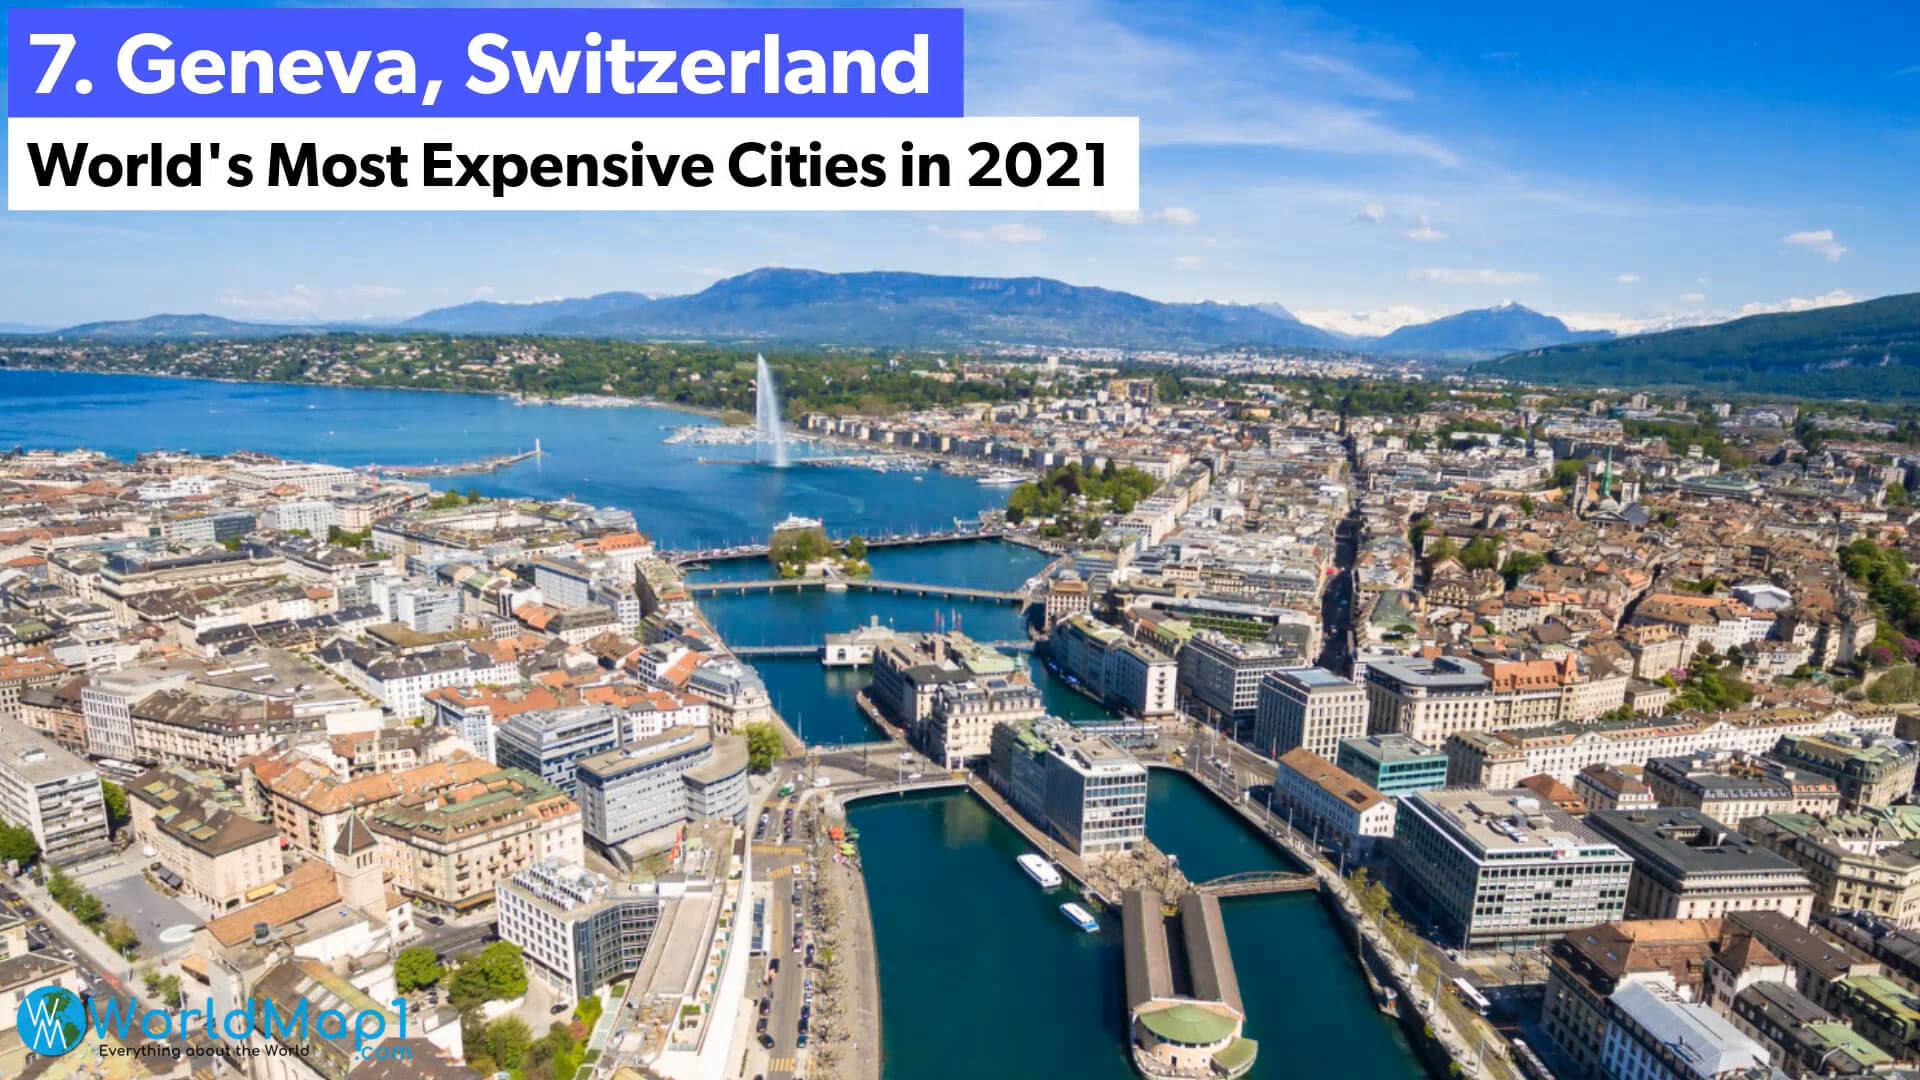 Les villes les plus chères du monde - Geneva, Suisse